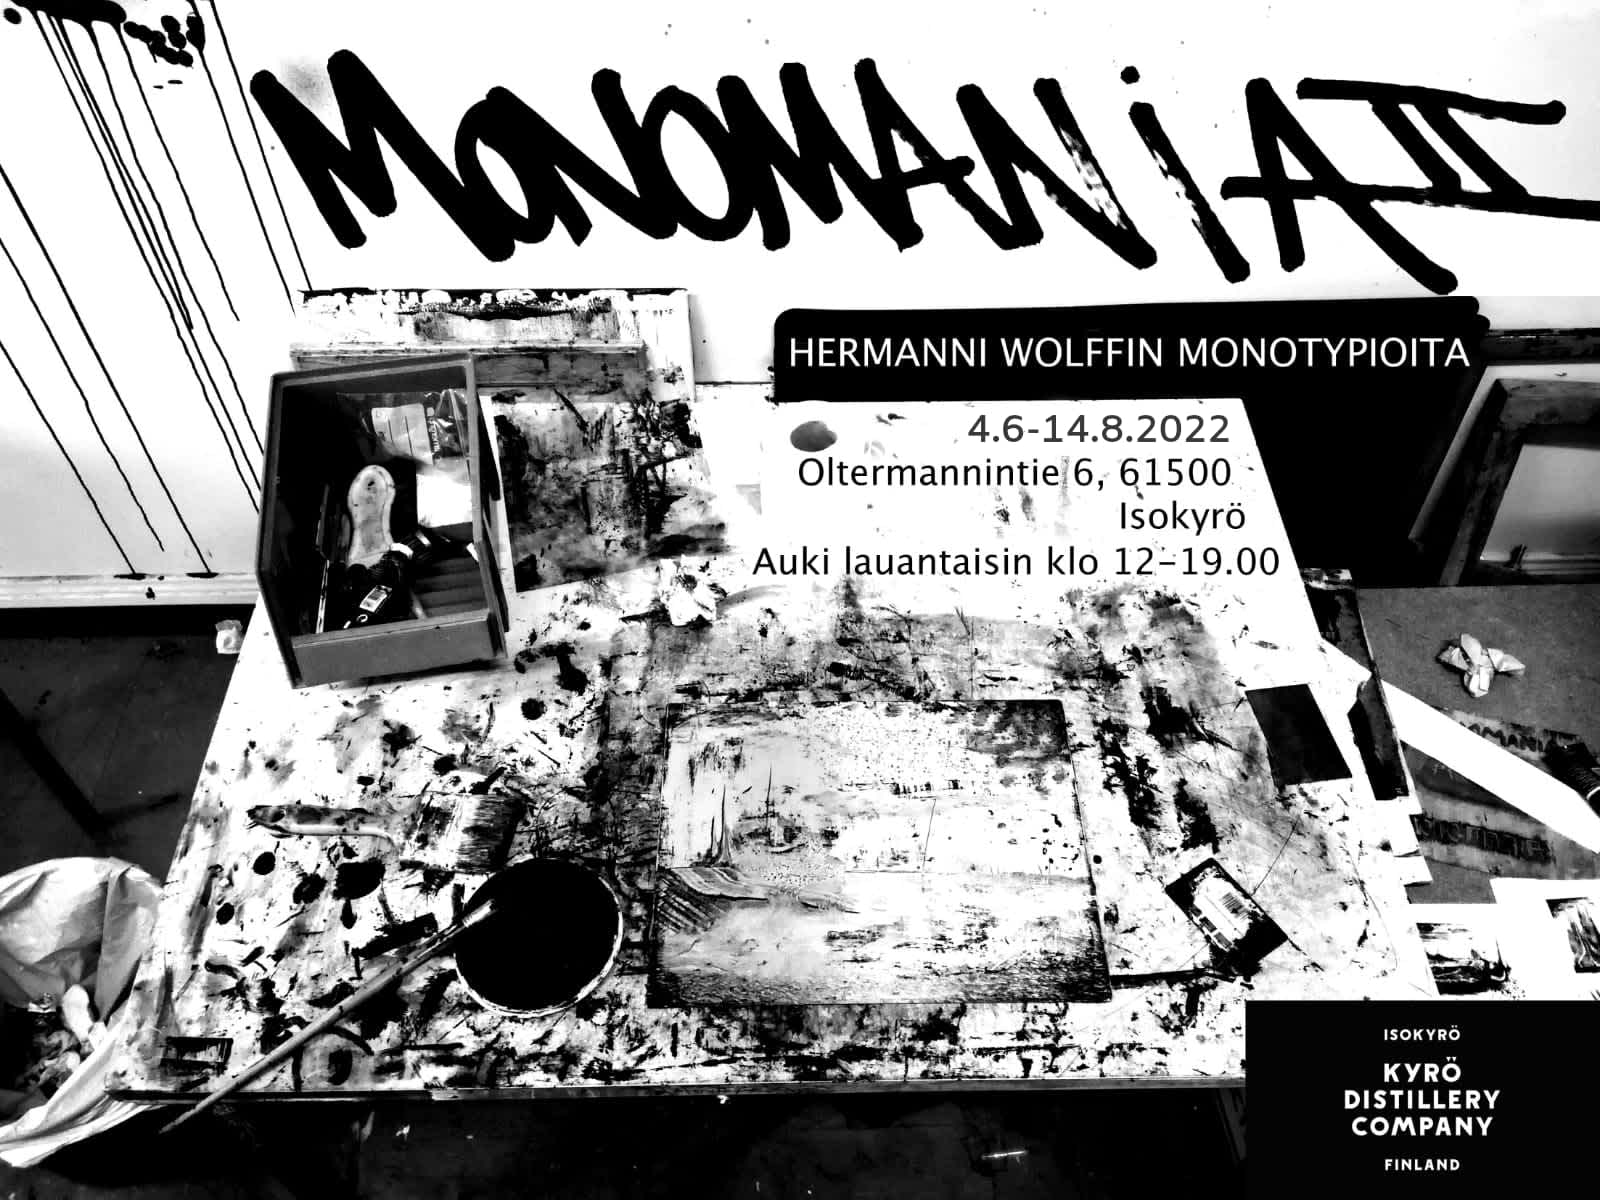 Monomania II